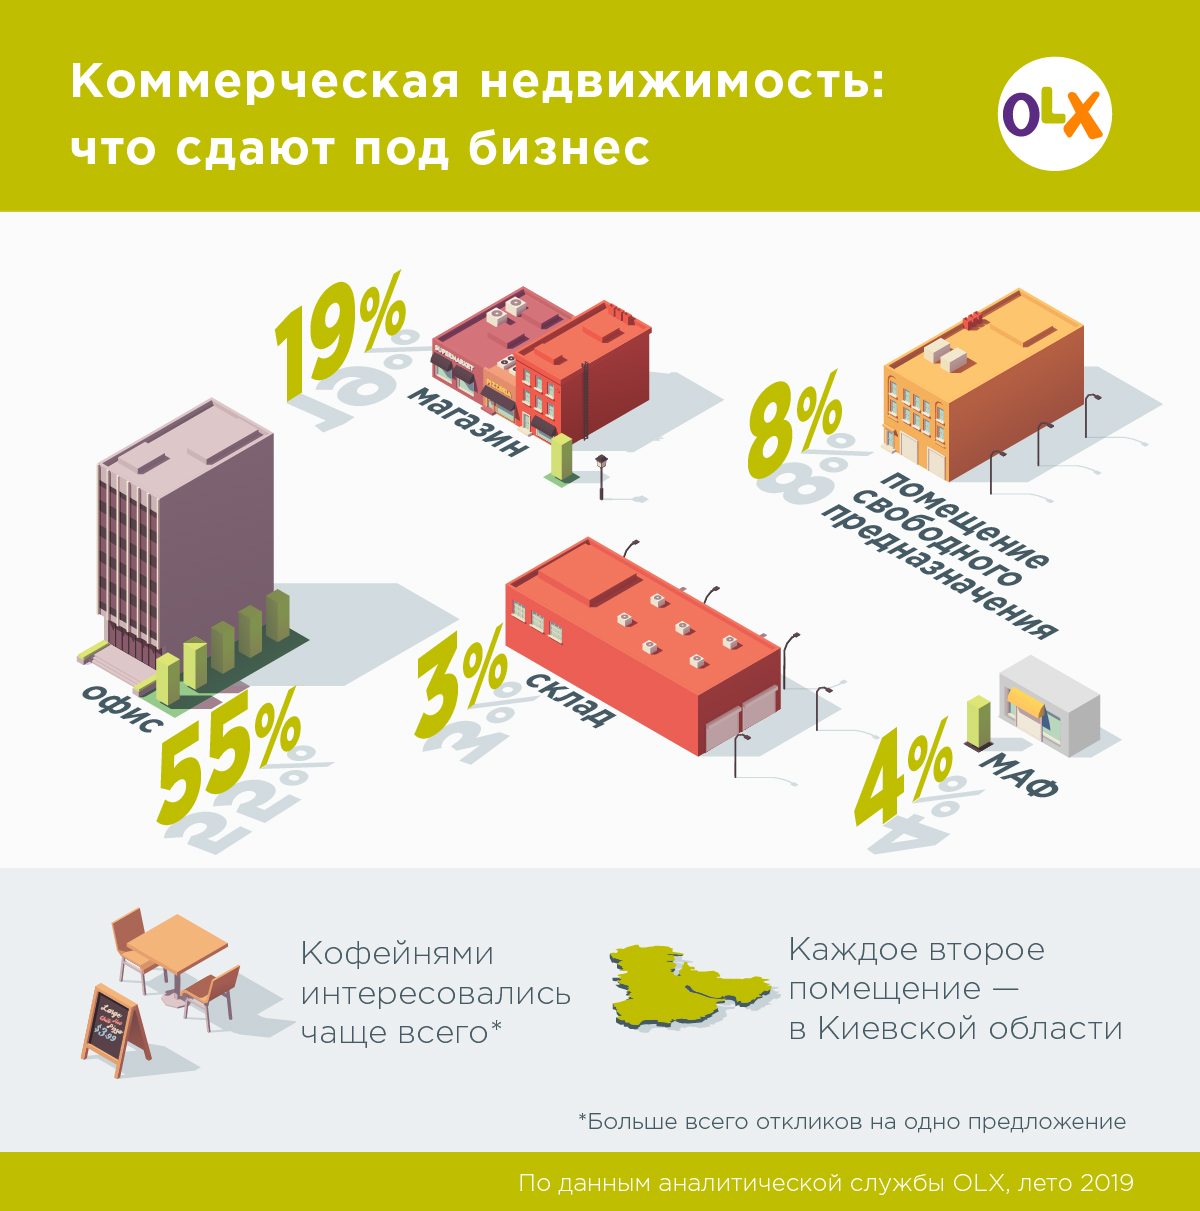 OLX_Офисы, магазины и МАФы - что сдают под бизнес в Украине